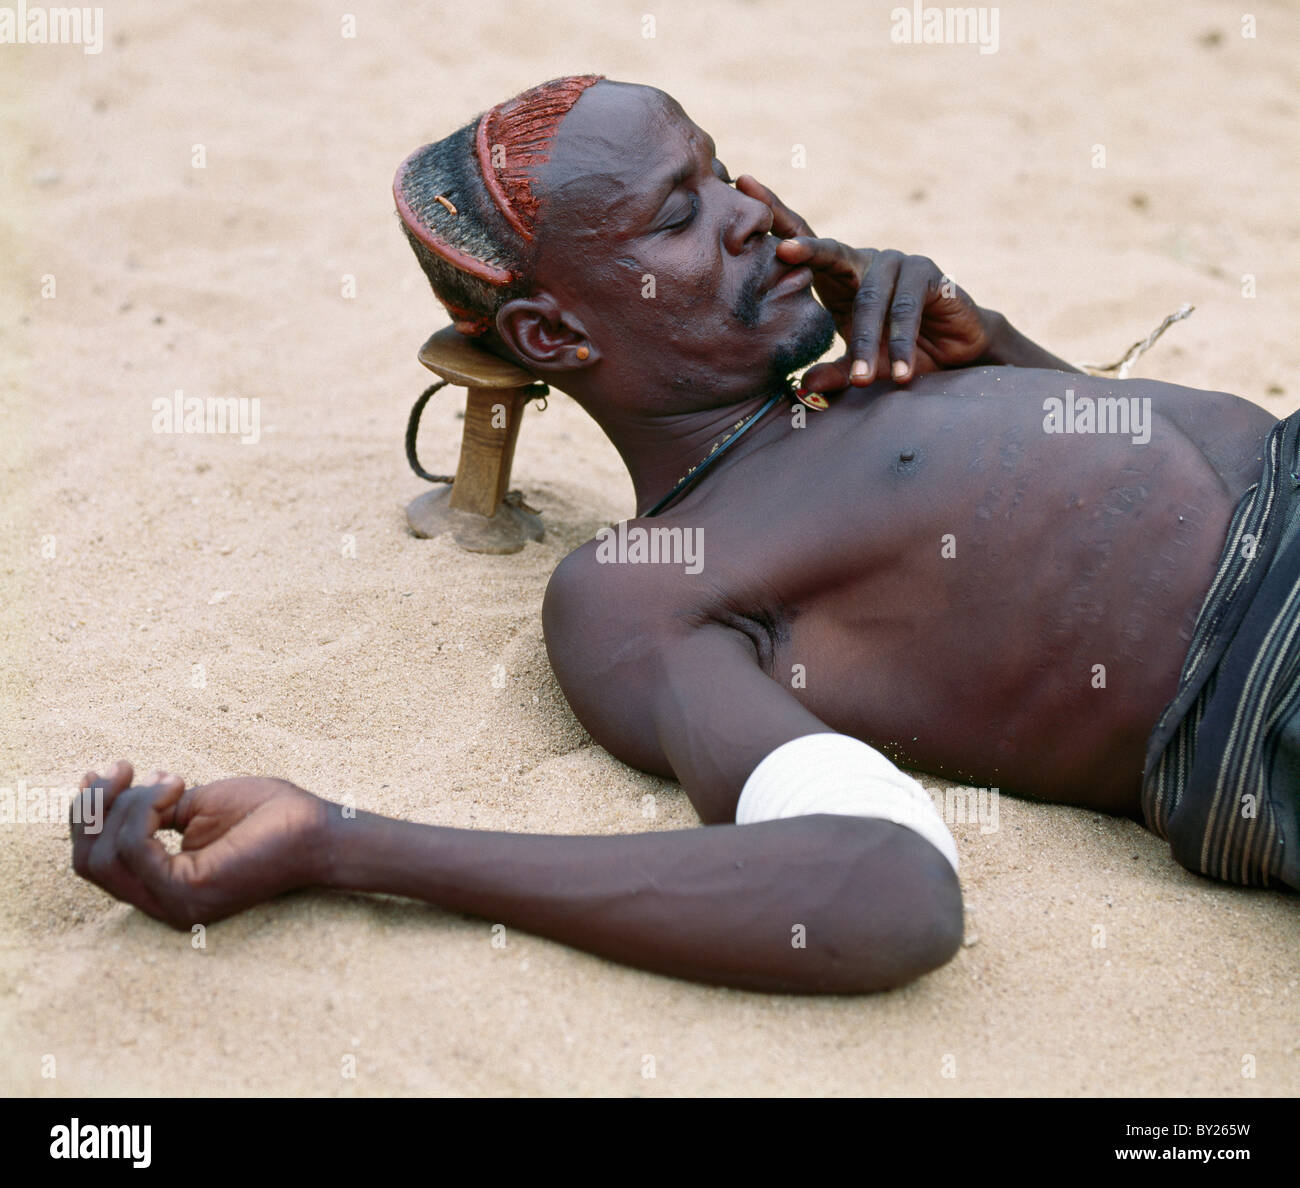 Un Turkana l uomo si prende un pisolino usando il suo sgabello in legno come un appoggiatesta per proteggere la sua elaborata acconciatura. Distretto Turkana in Kenya Foto Stock